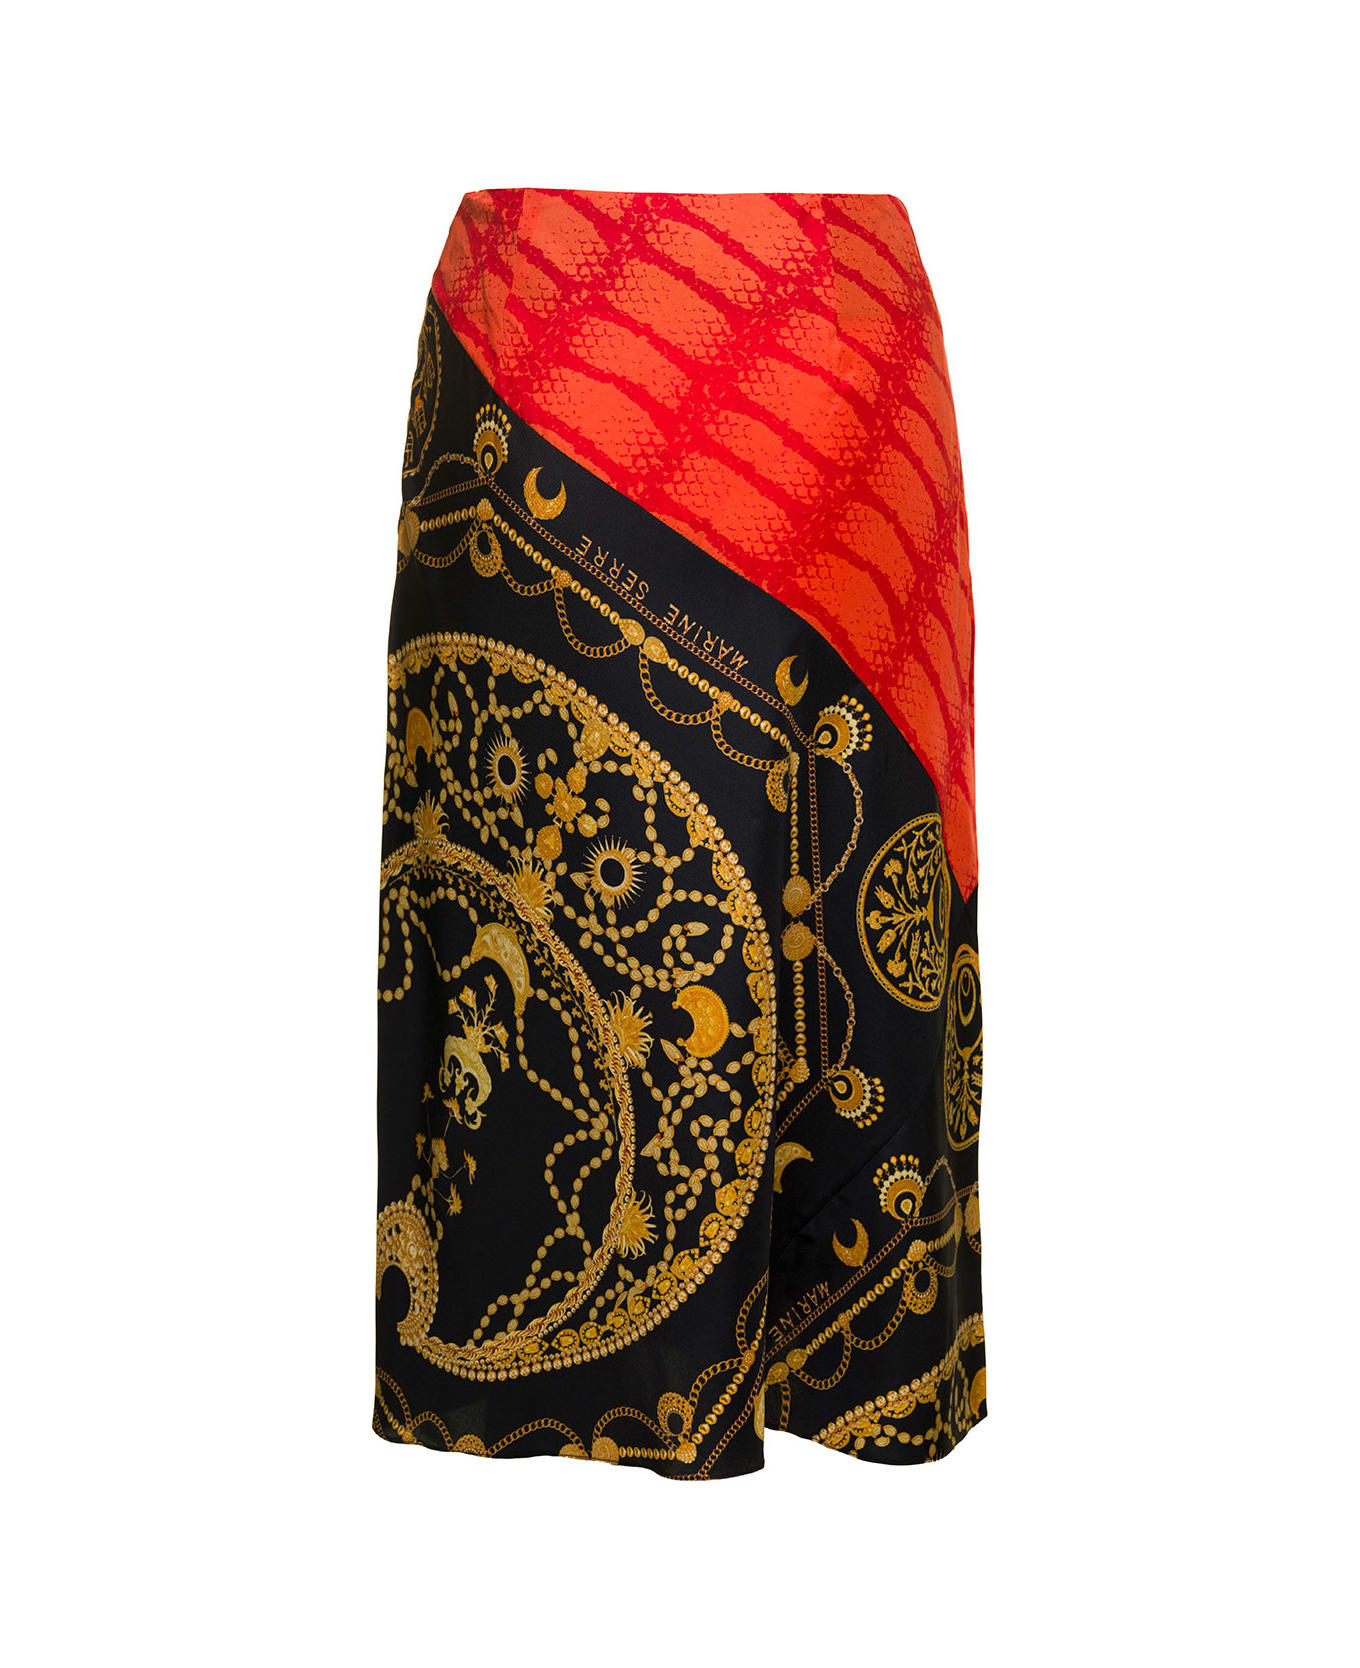 Marine Serre Midi Multicolor Skirt With All-over Ornament Jewelry Print In Silk Woman - Multicolor